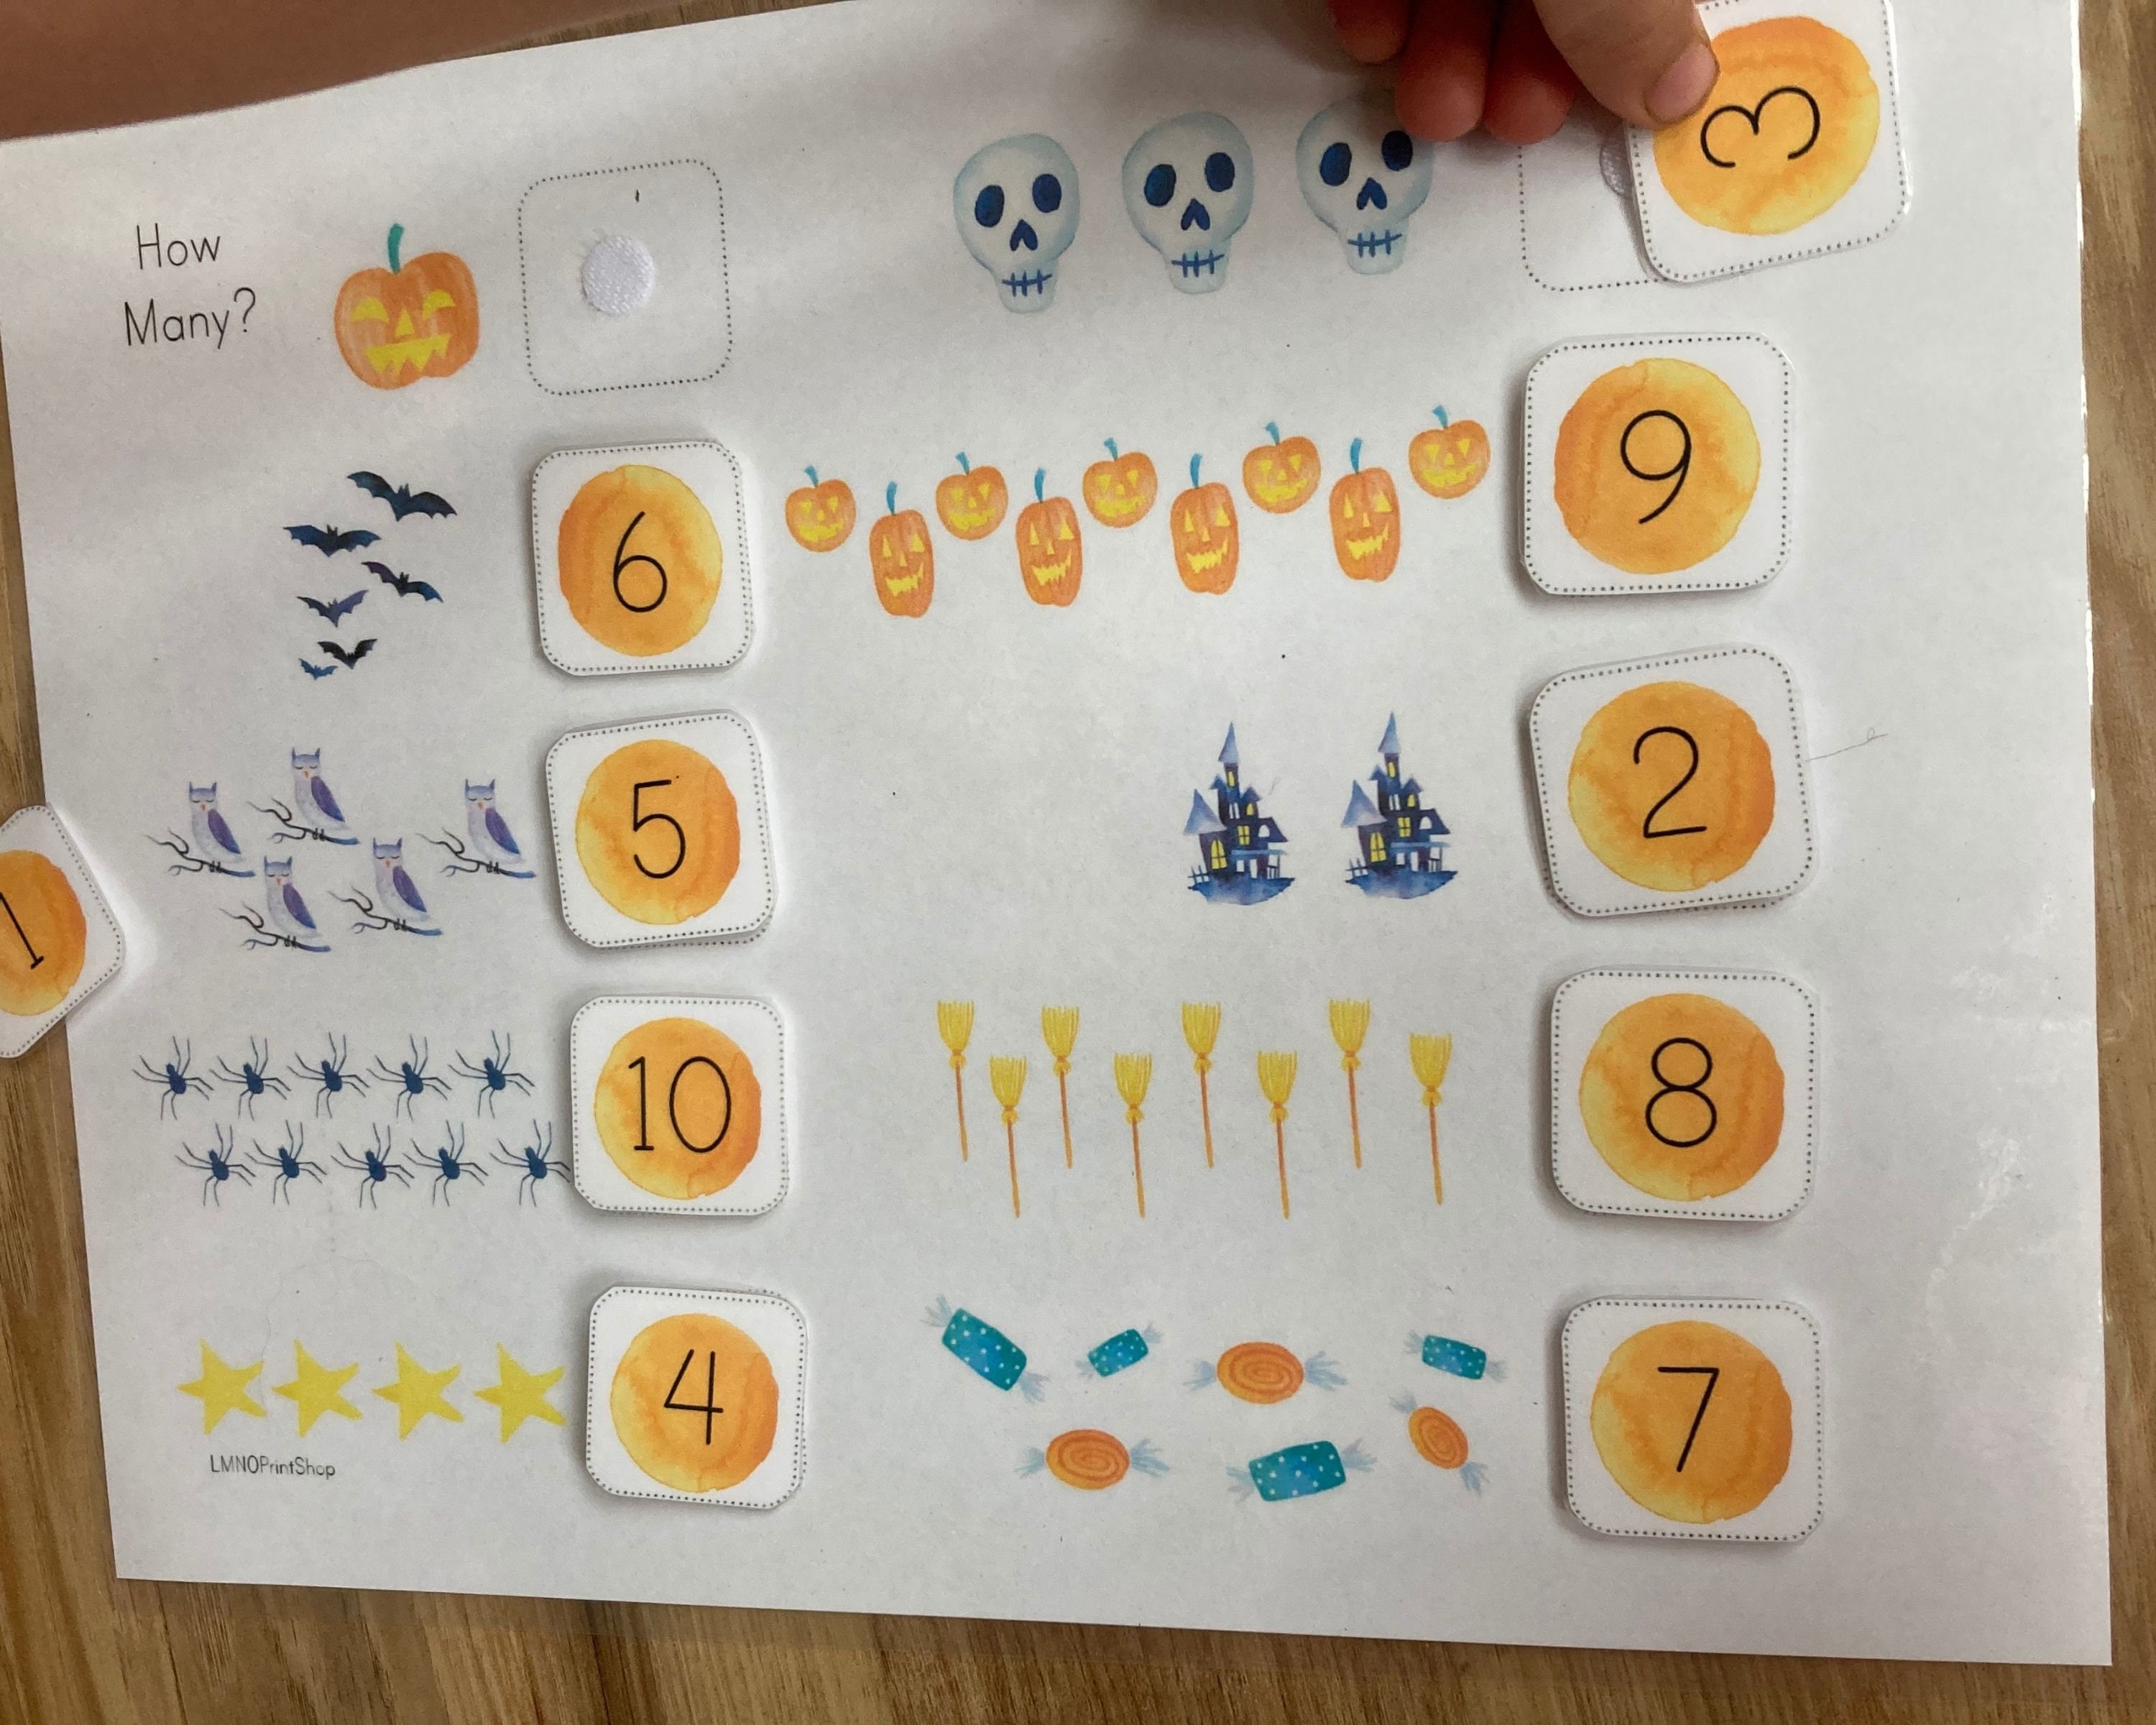 Jouets Montessori en Bois pour Enfant de 1, 2 et 3 ans, Jeu de Puzzle,  décennie